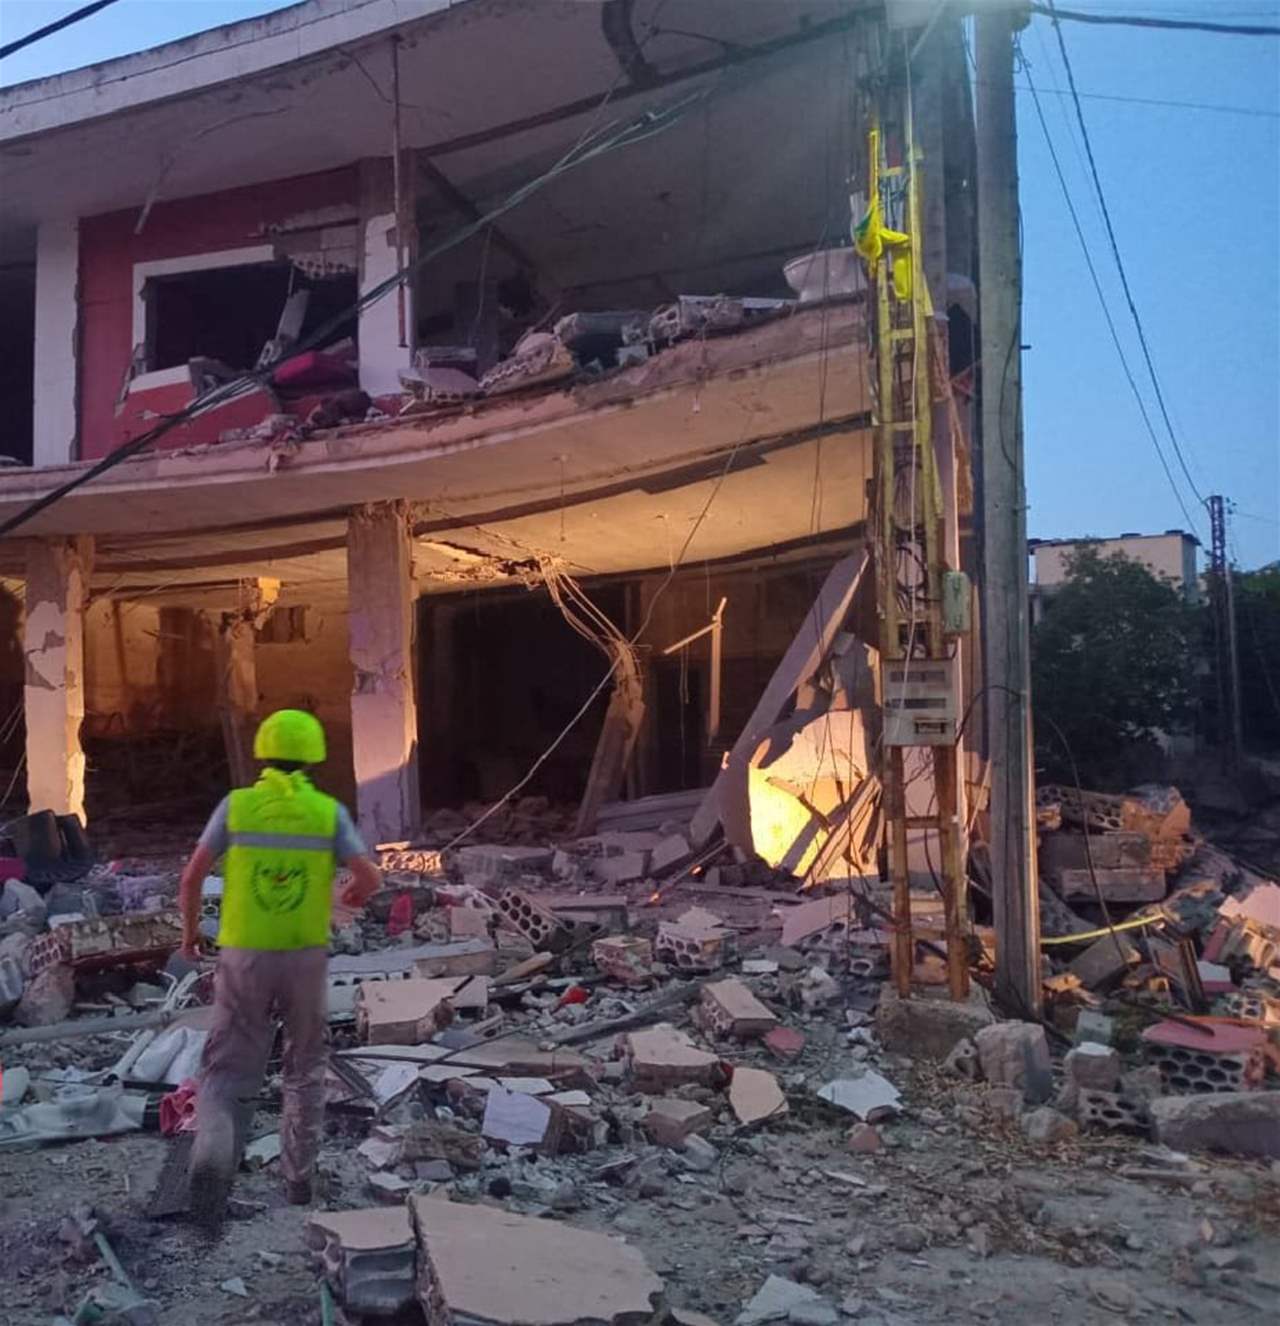 بالصور- آثار الغارة التي استهدفت مبنى في كفركلا فجر اليوم